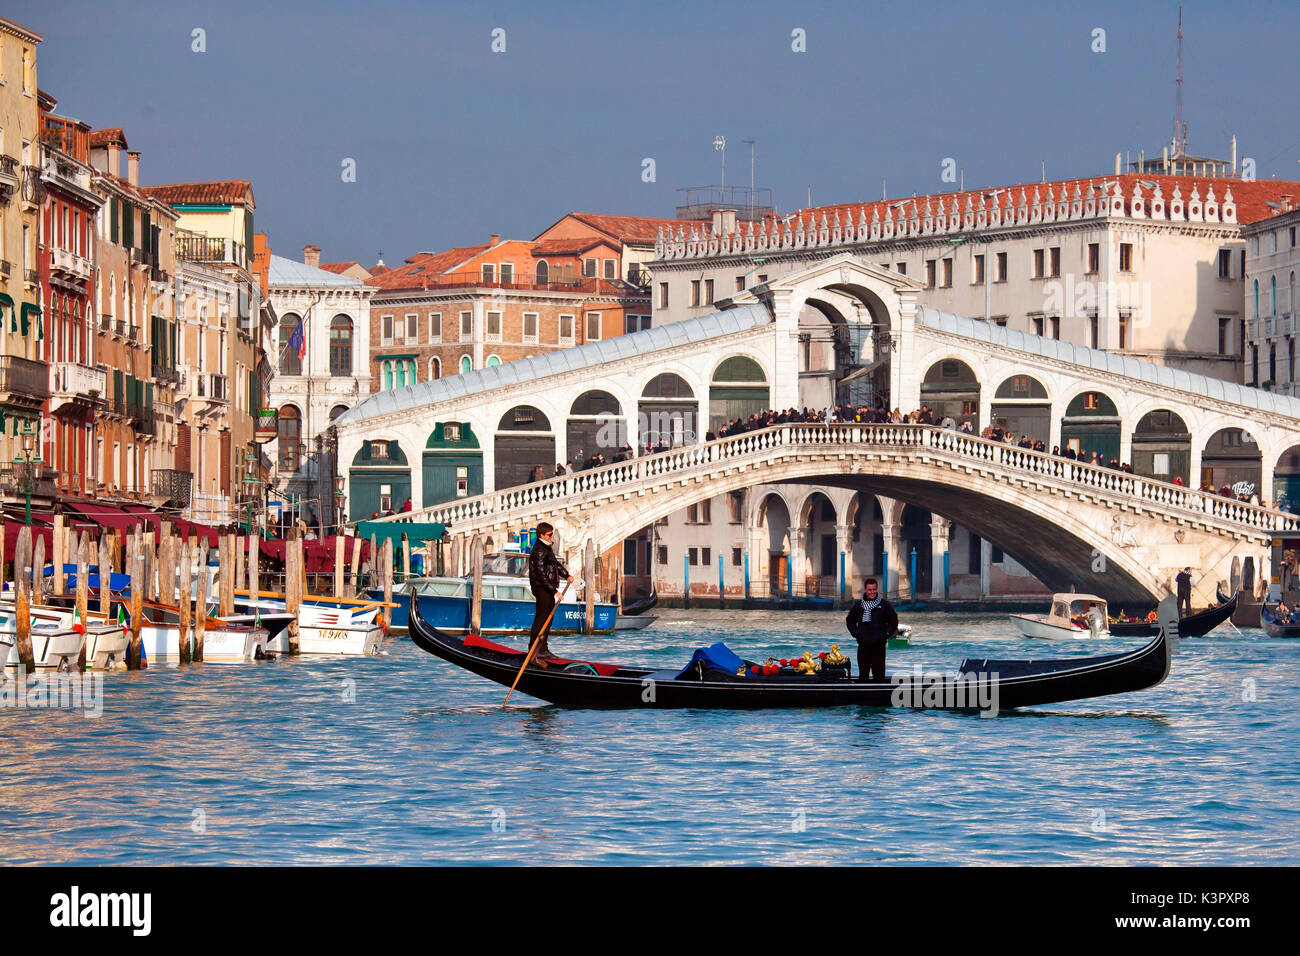 Eine Gondel der Grand Canal Kreuzung rechts vor der Rialto Brücke, einem der bekanntesten venezianischen Sehenswürdigkeiten Venedig, Venetien Italien Europa Stockfoto